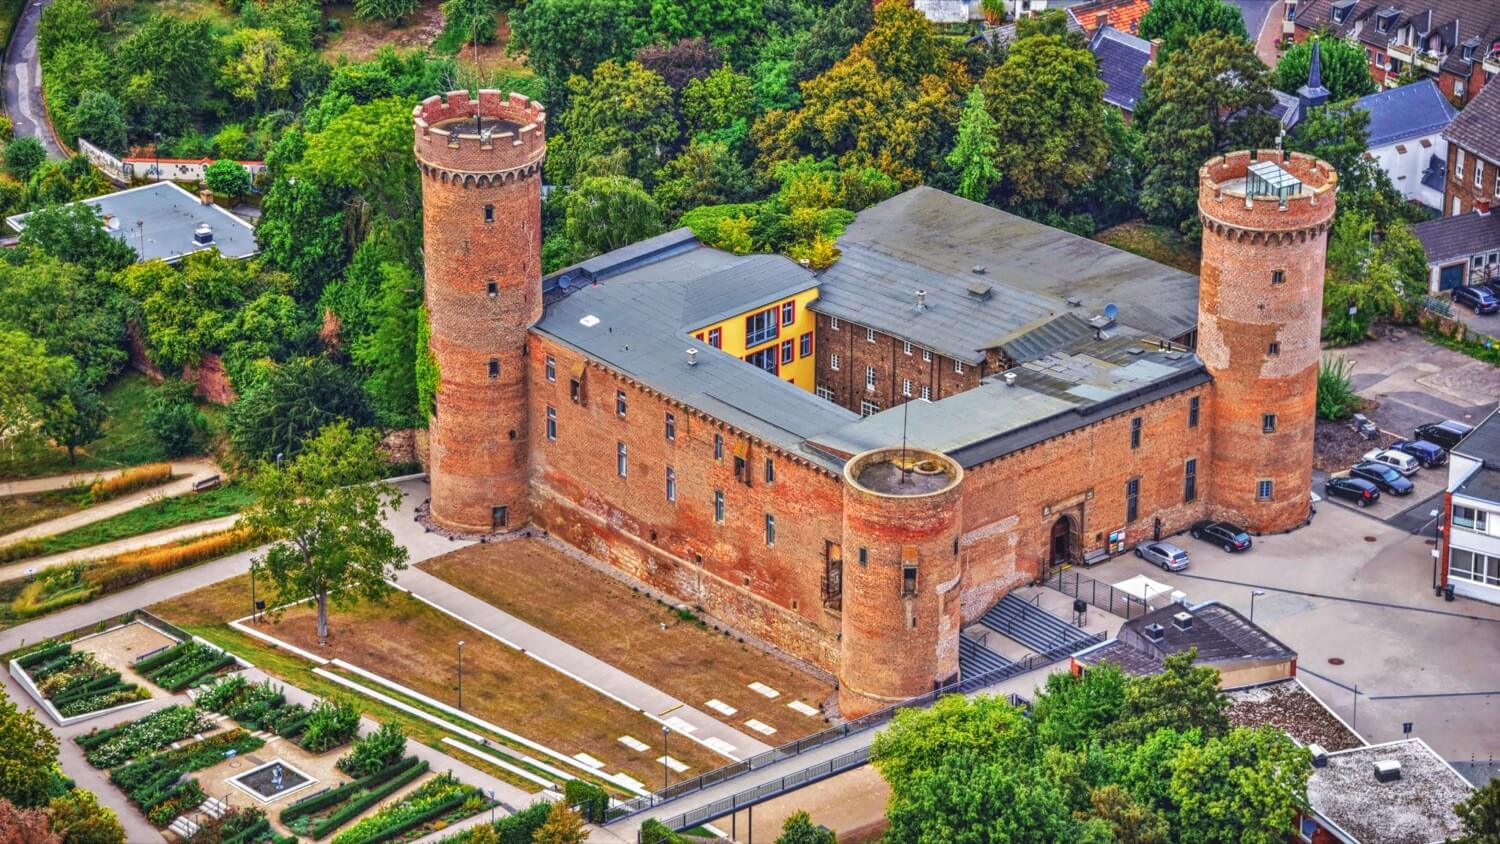 Zülpich Castle